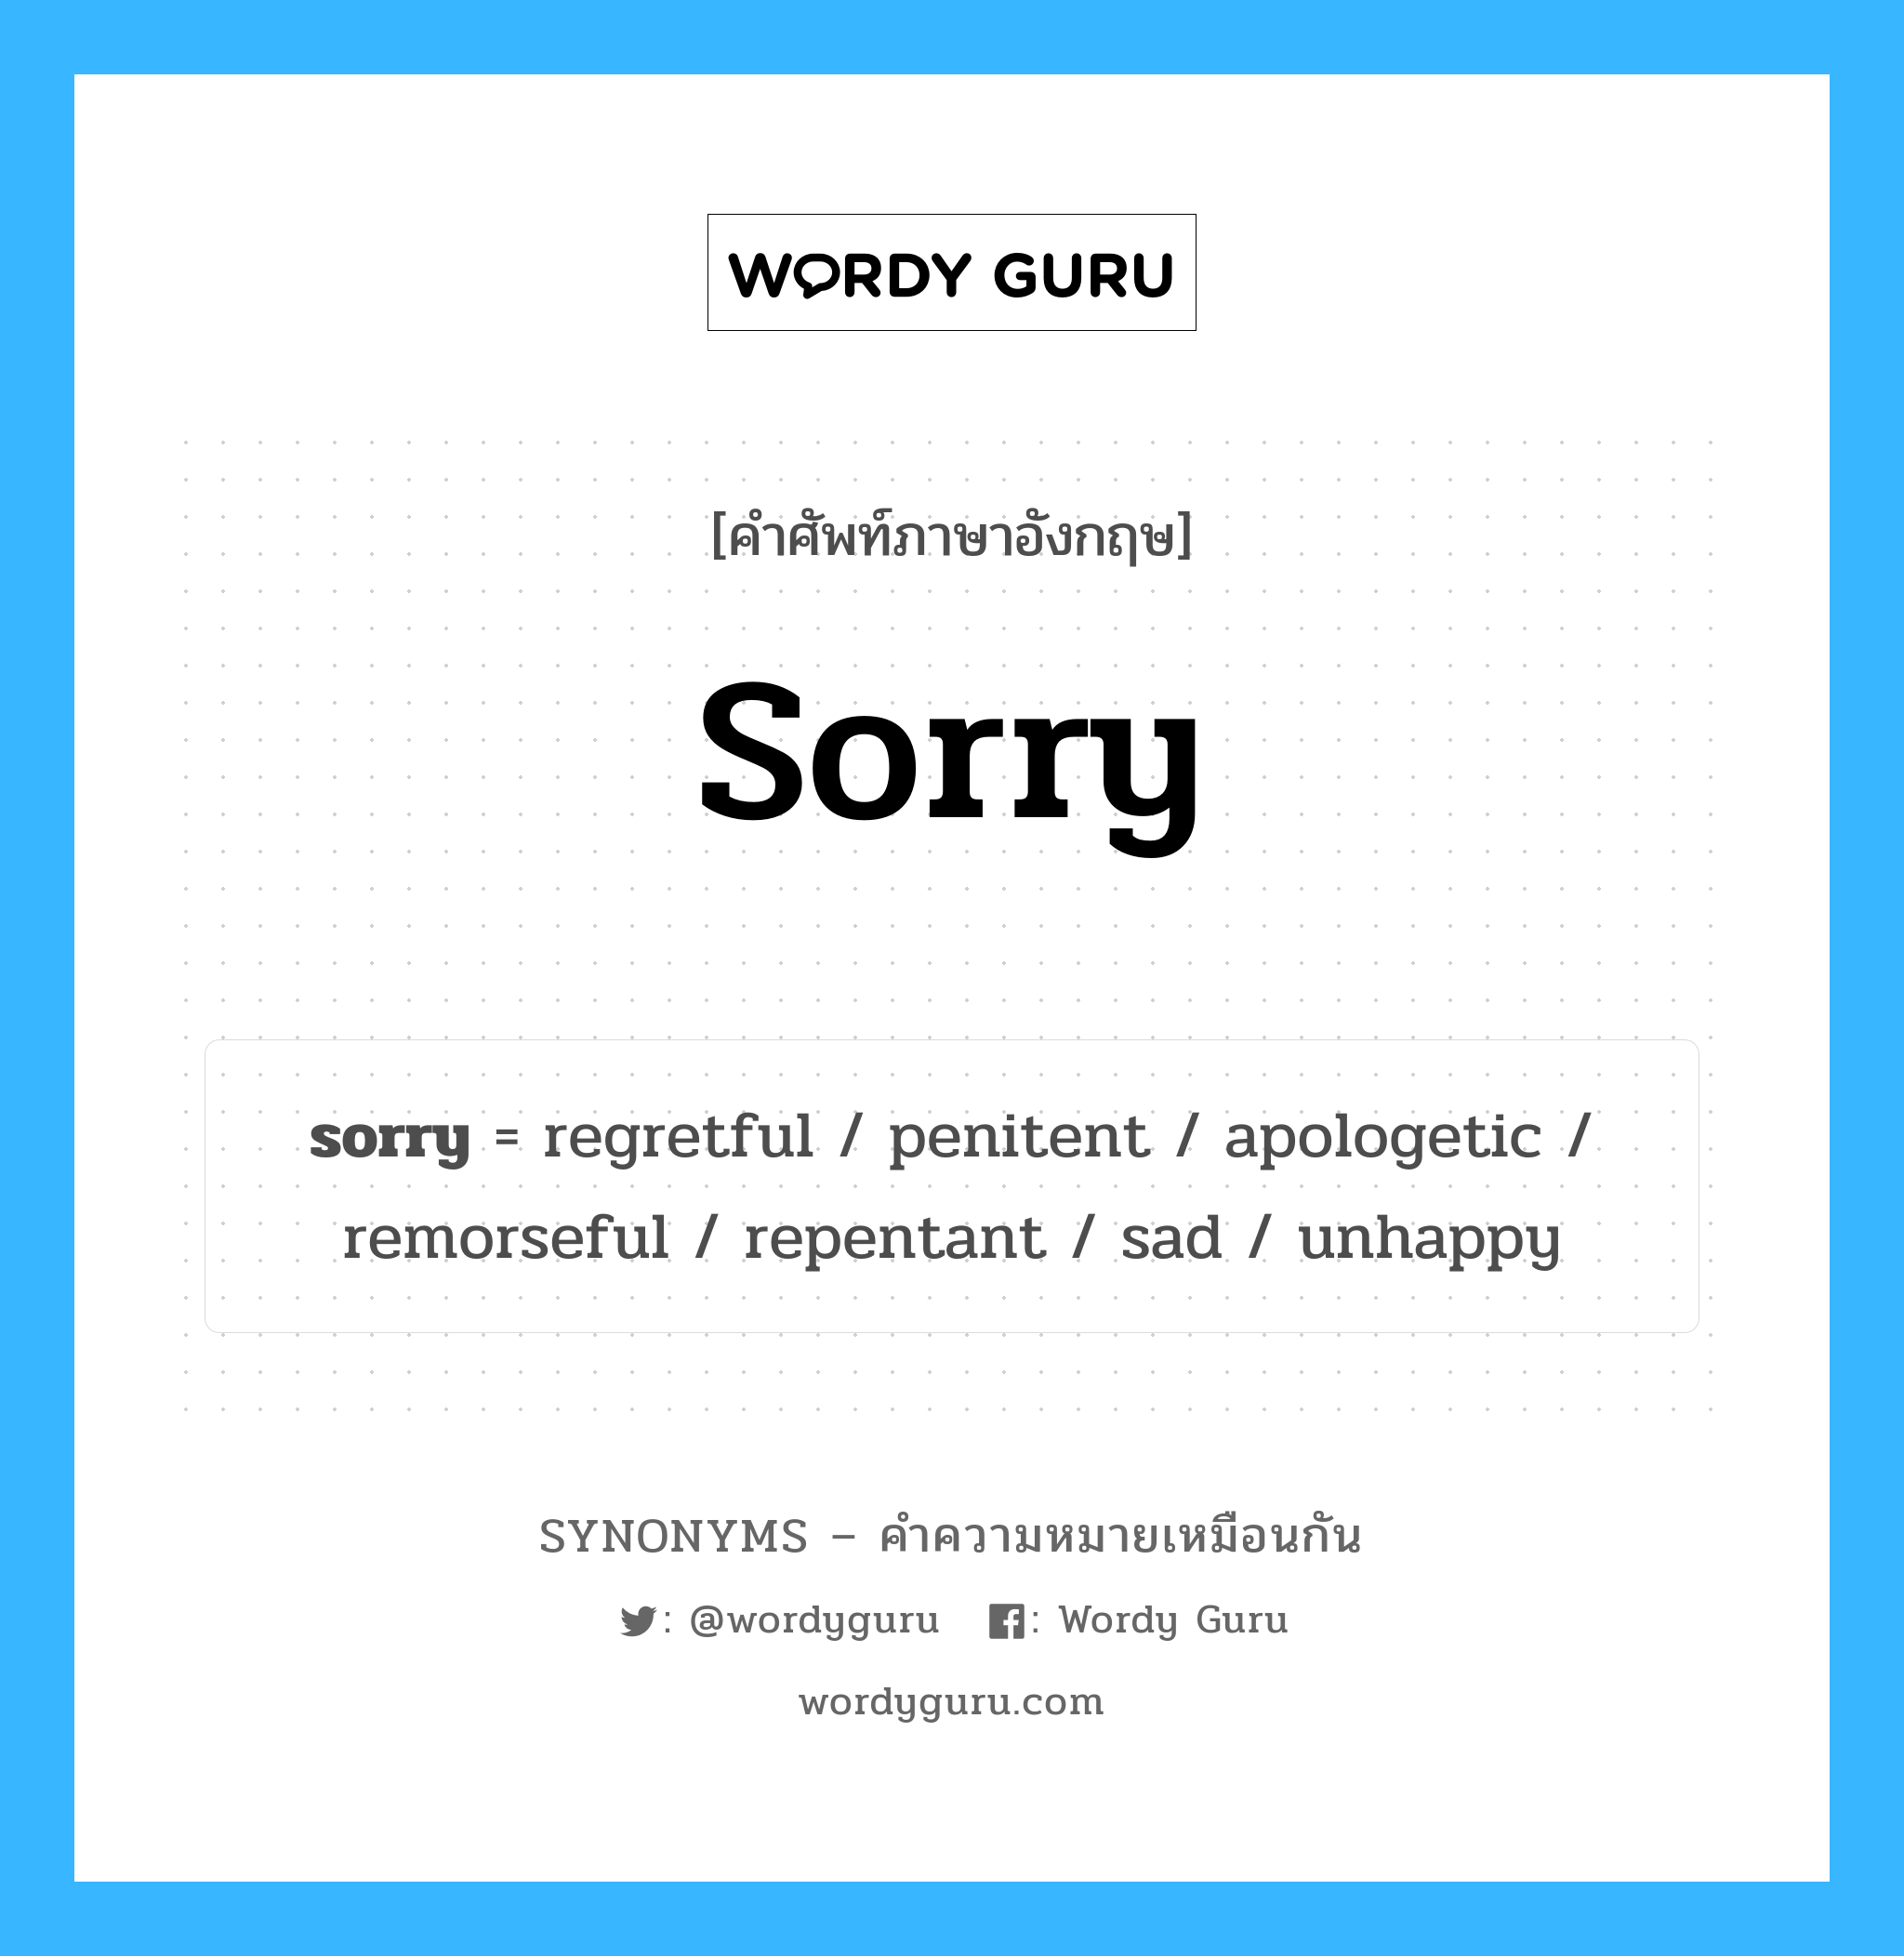 sorry เป็นหนึ่งใน sad และมีคำอื่น ๆ อีกดังนี้, คำศัพท์ภาษาอังกฤษ sorry ความหมายคล้ายกันกับ sad แปลว่า เศร้า หมวด sad